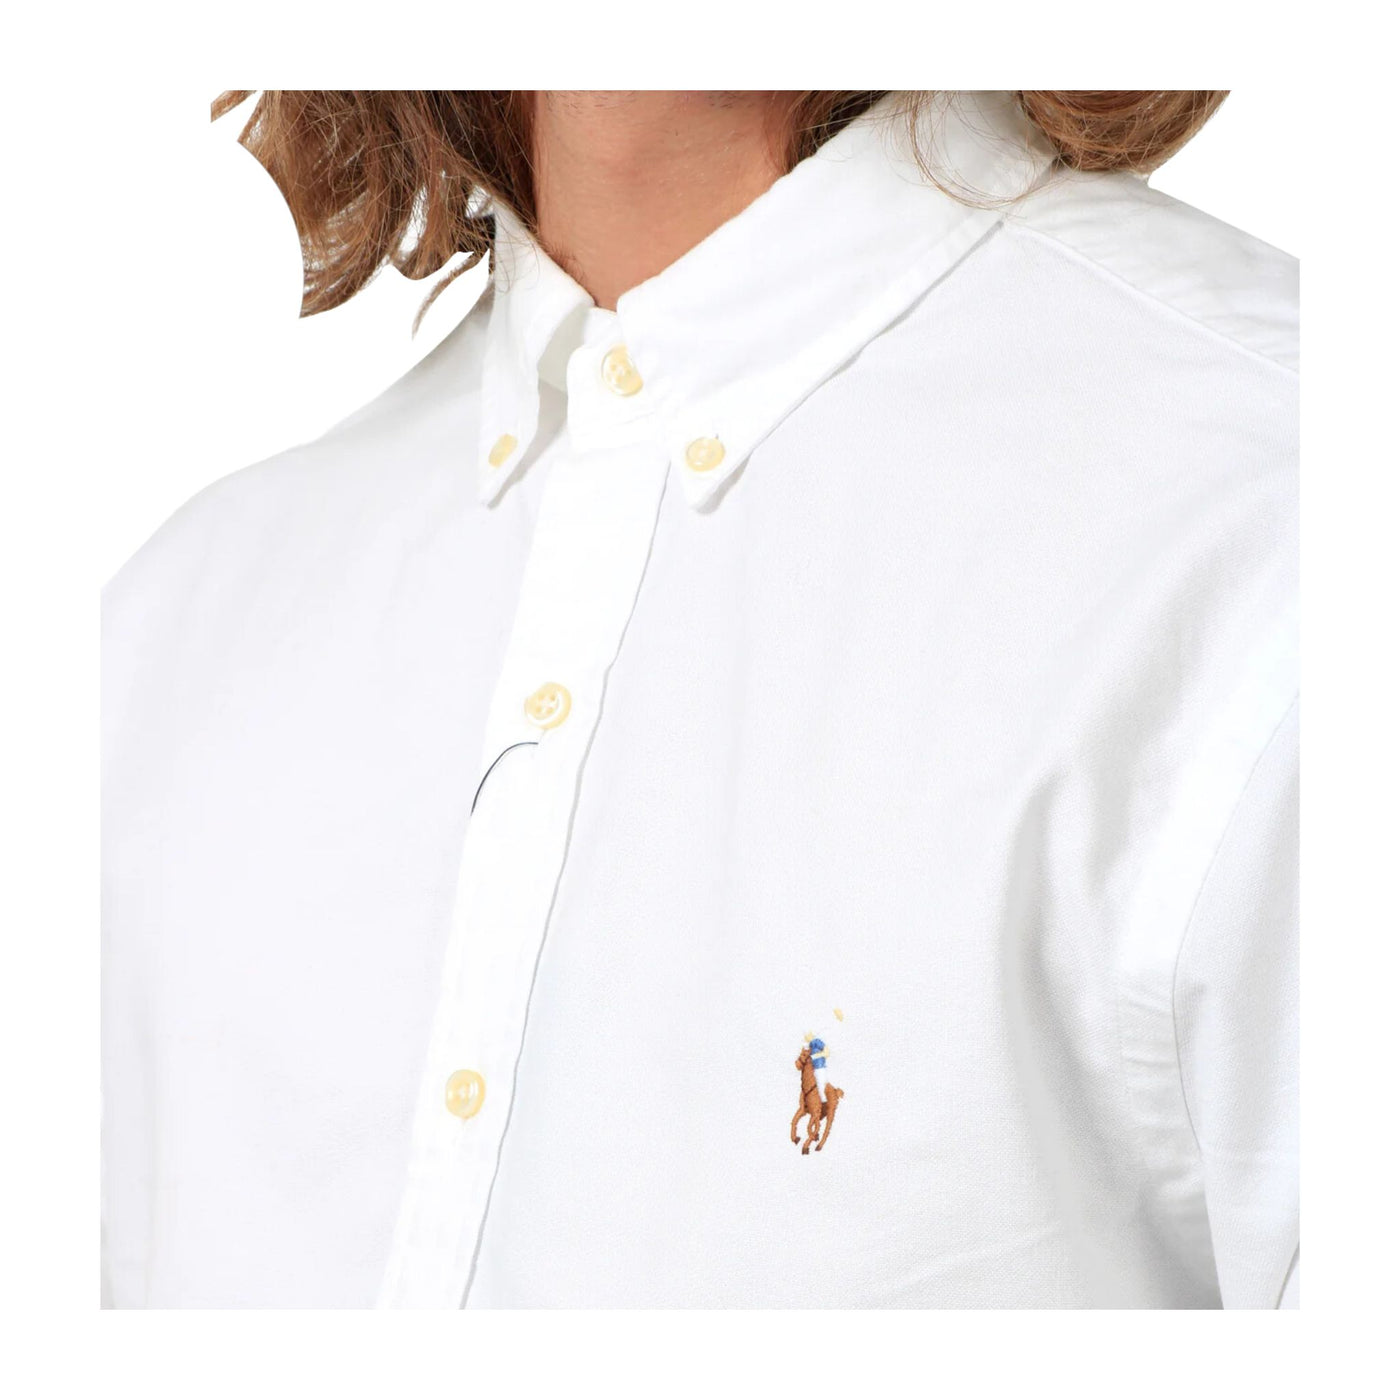 Dettaglio del logo ricamato su Polo Ralph Lauren, chiusura con bottoni e colletto classico